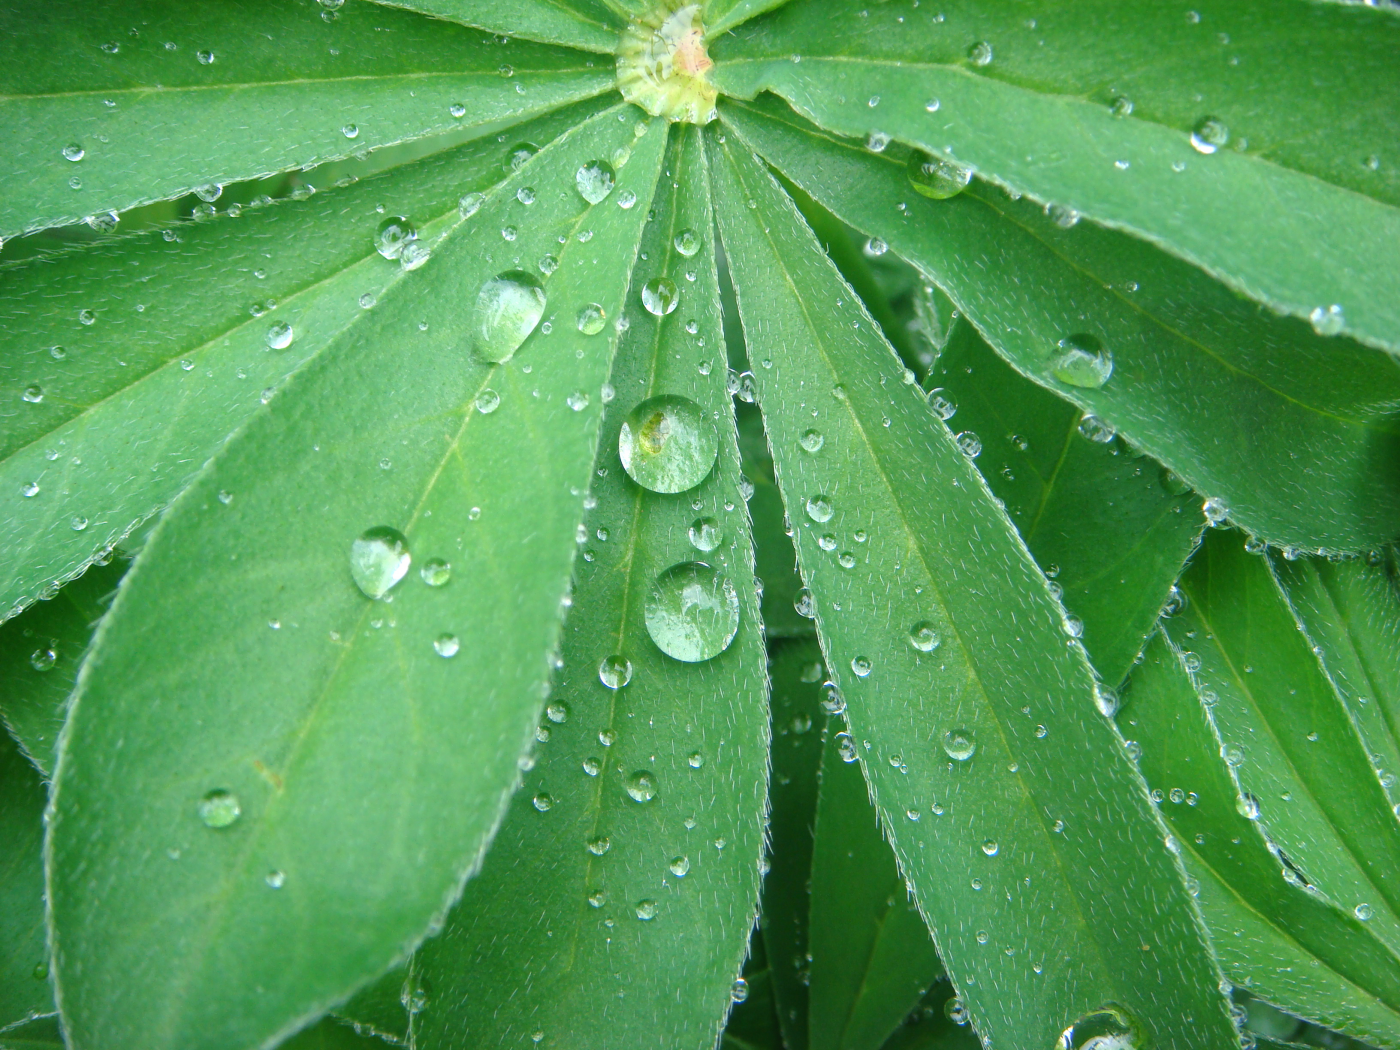 растение, цветок, люпин, лист, зеленый, капли, капля, дождь